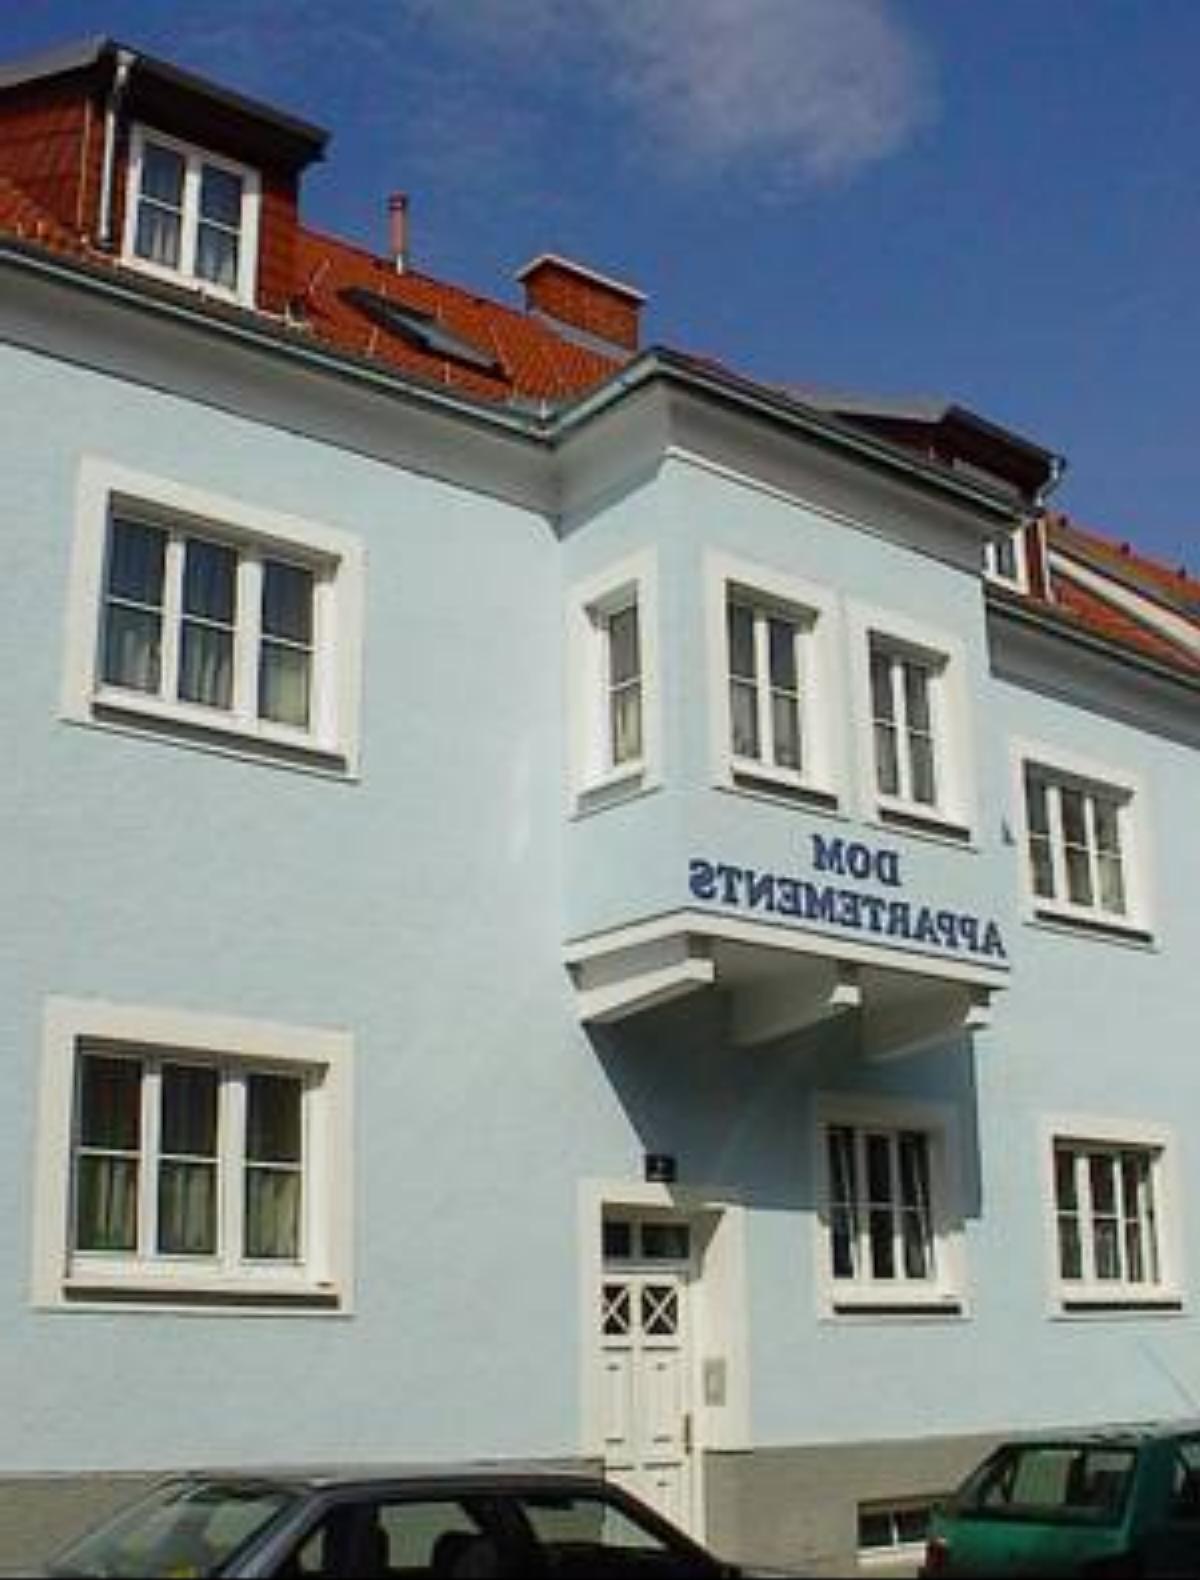 Domappartements Hotel Wiener Neustadt Austria